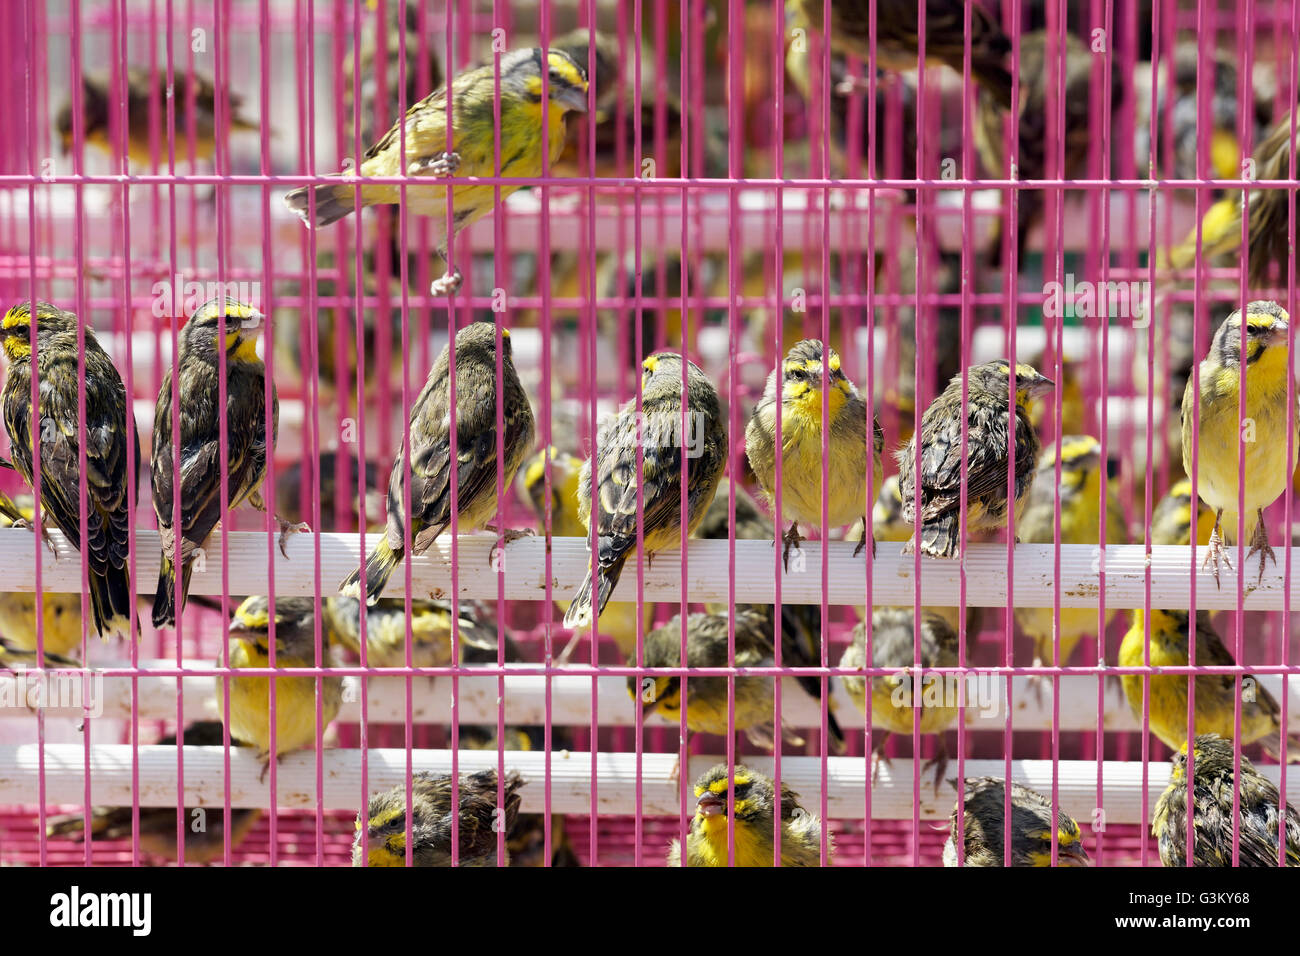 Songbirds for sale, pink cage, bird market, Yuen Po Street Bird Garden, Mong Kok, Kowloon, Hong Kong, China Stock Photo